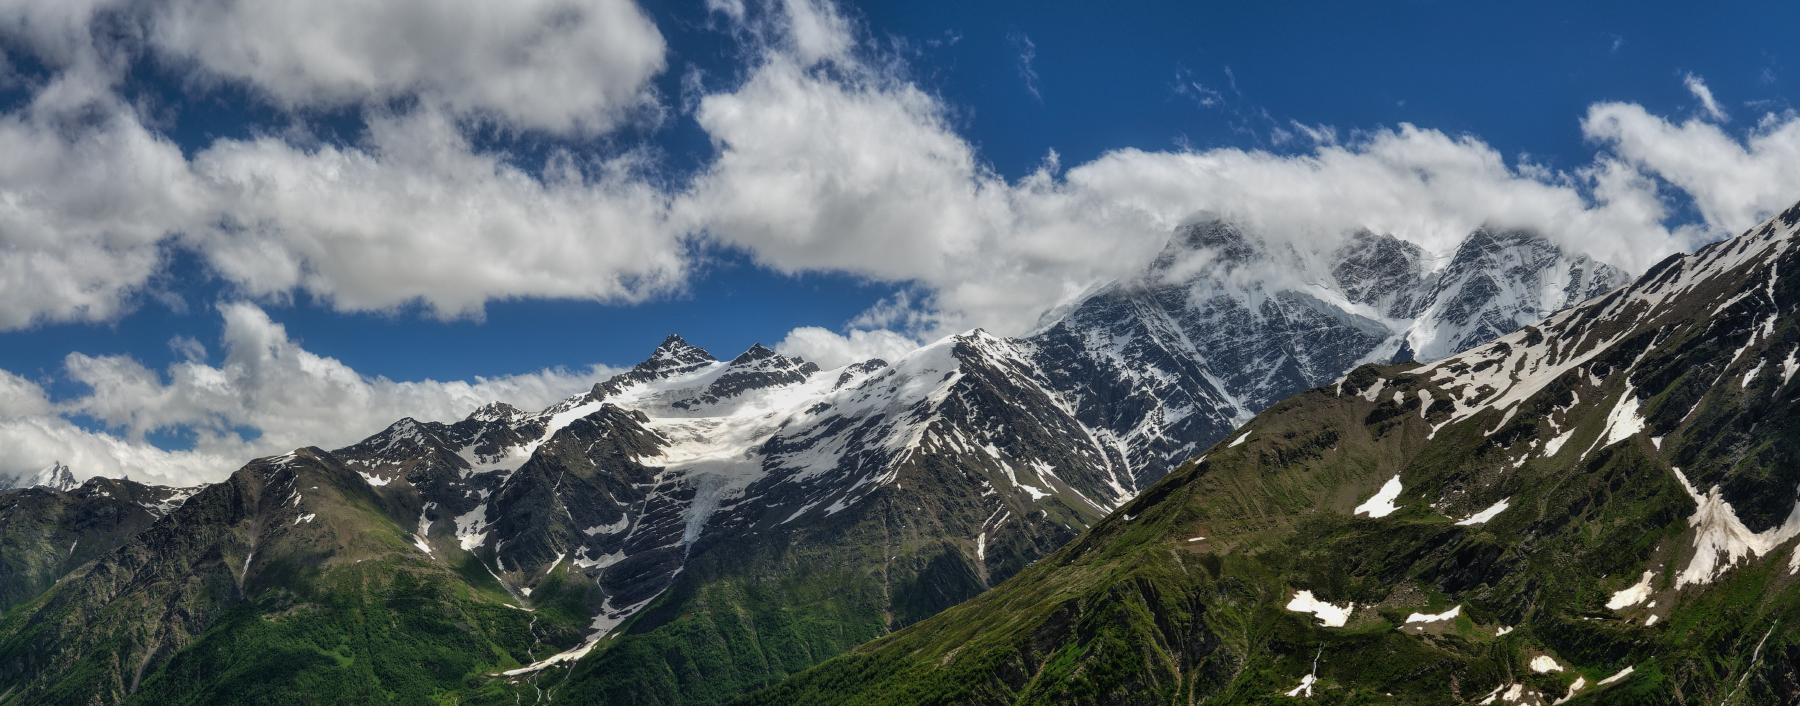 15 Горная вершина в центральной части главного Кавказского хребта